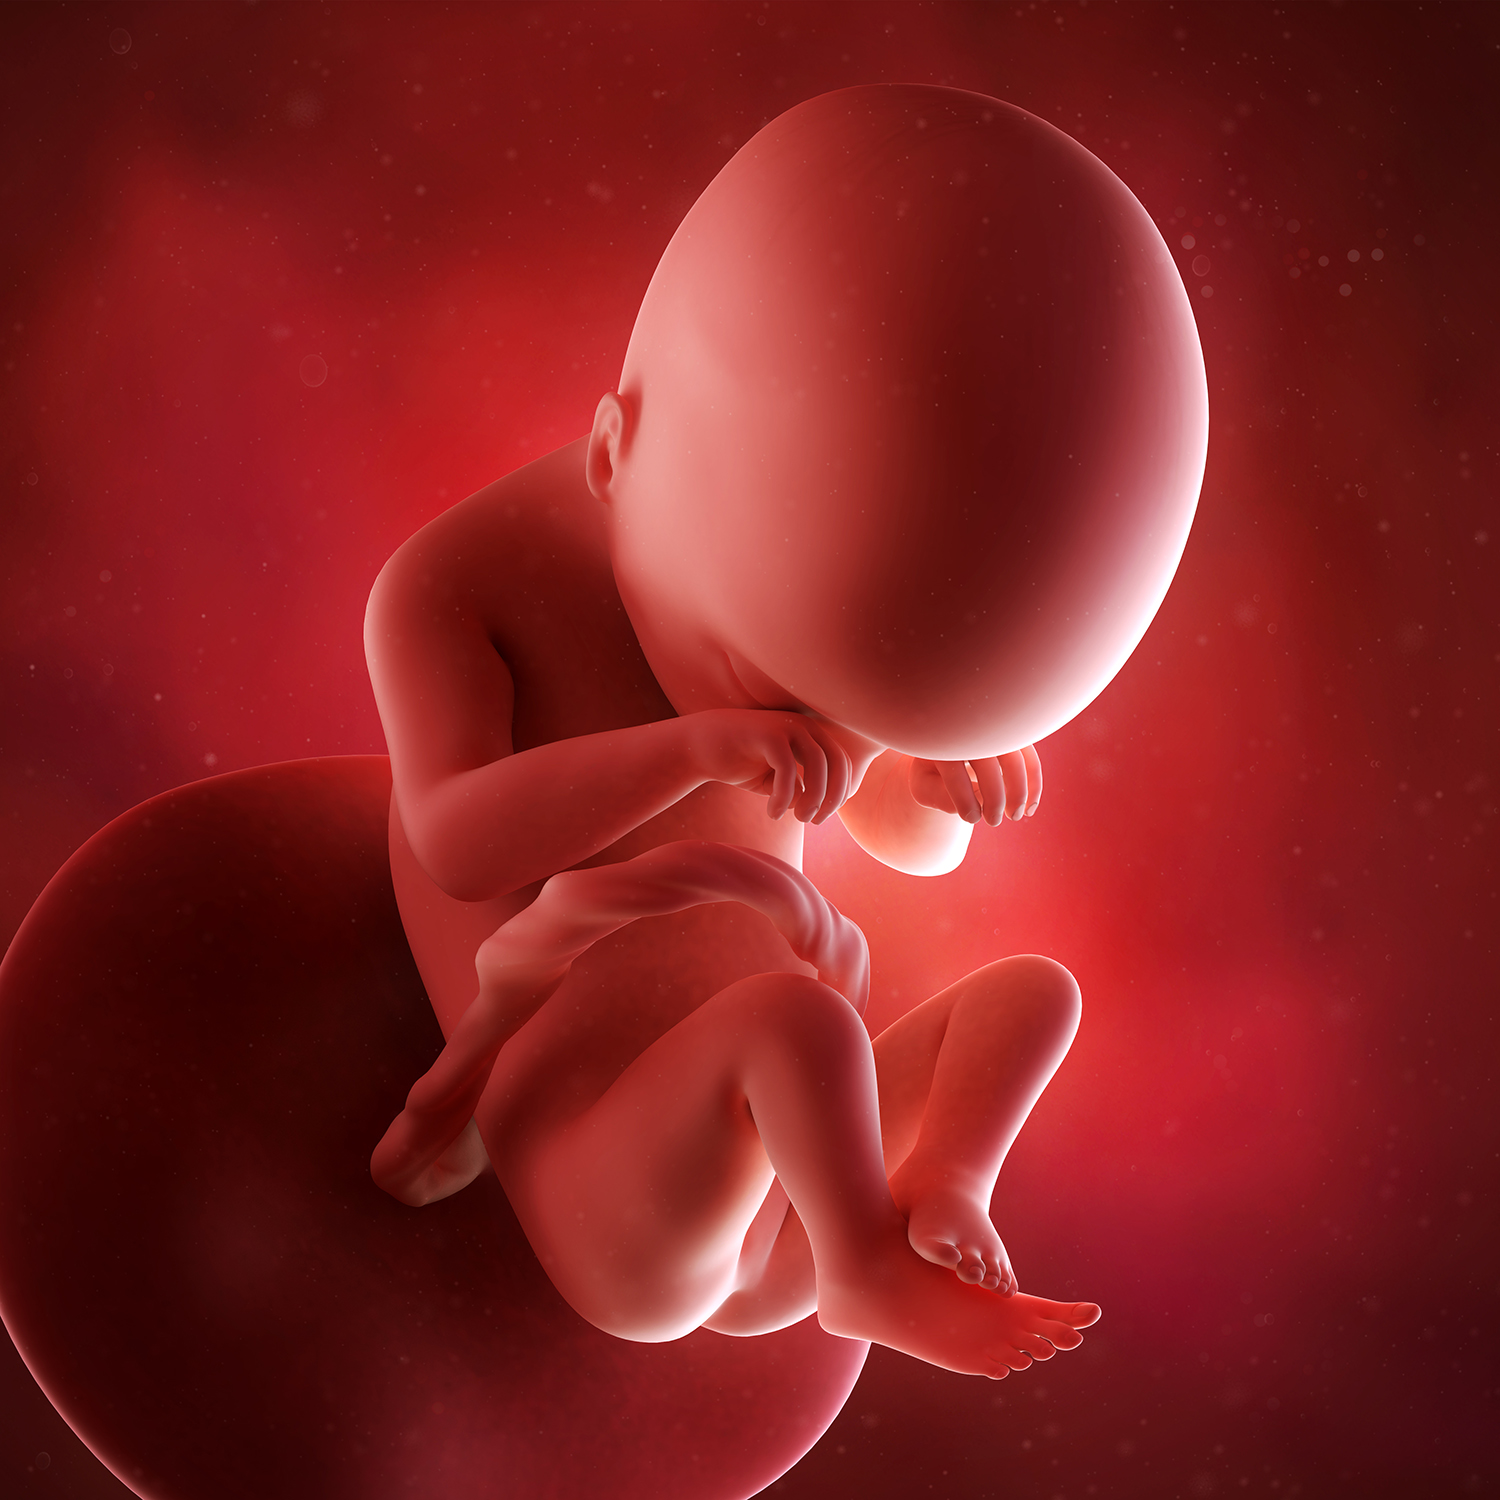 Внутриутробная жизнь ребенка